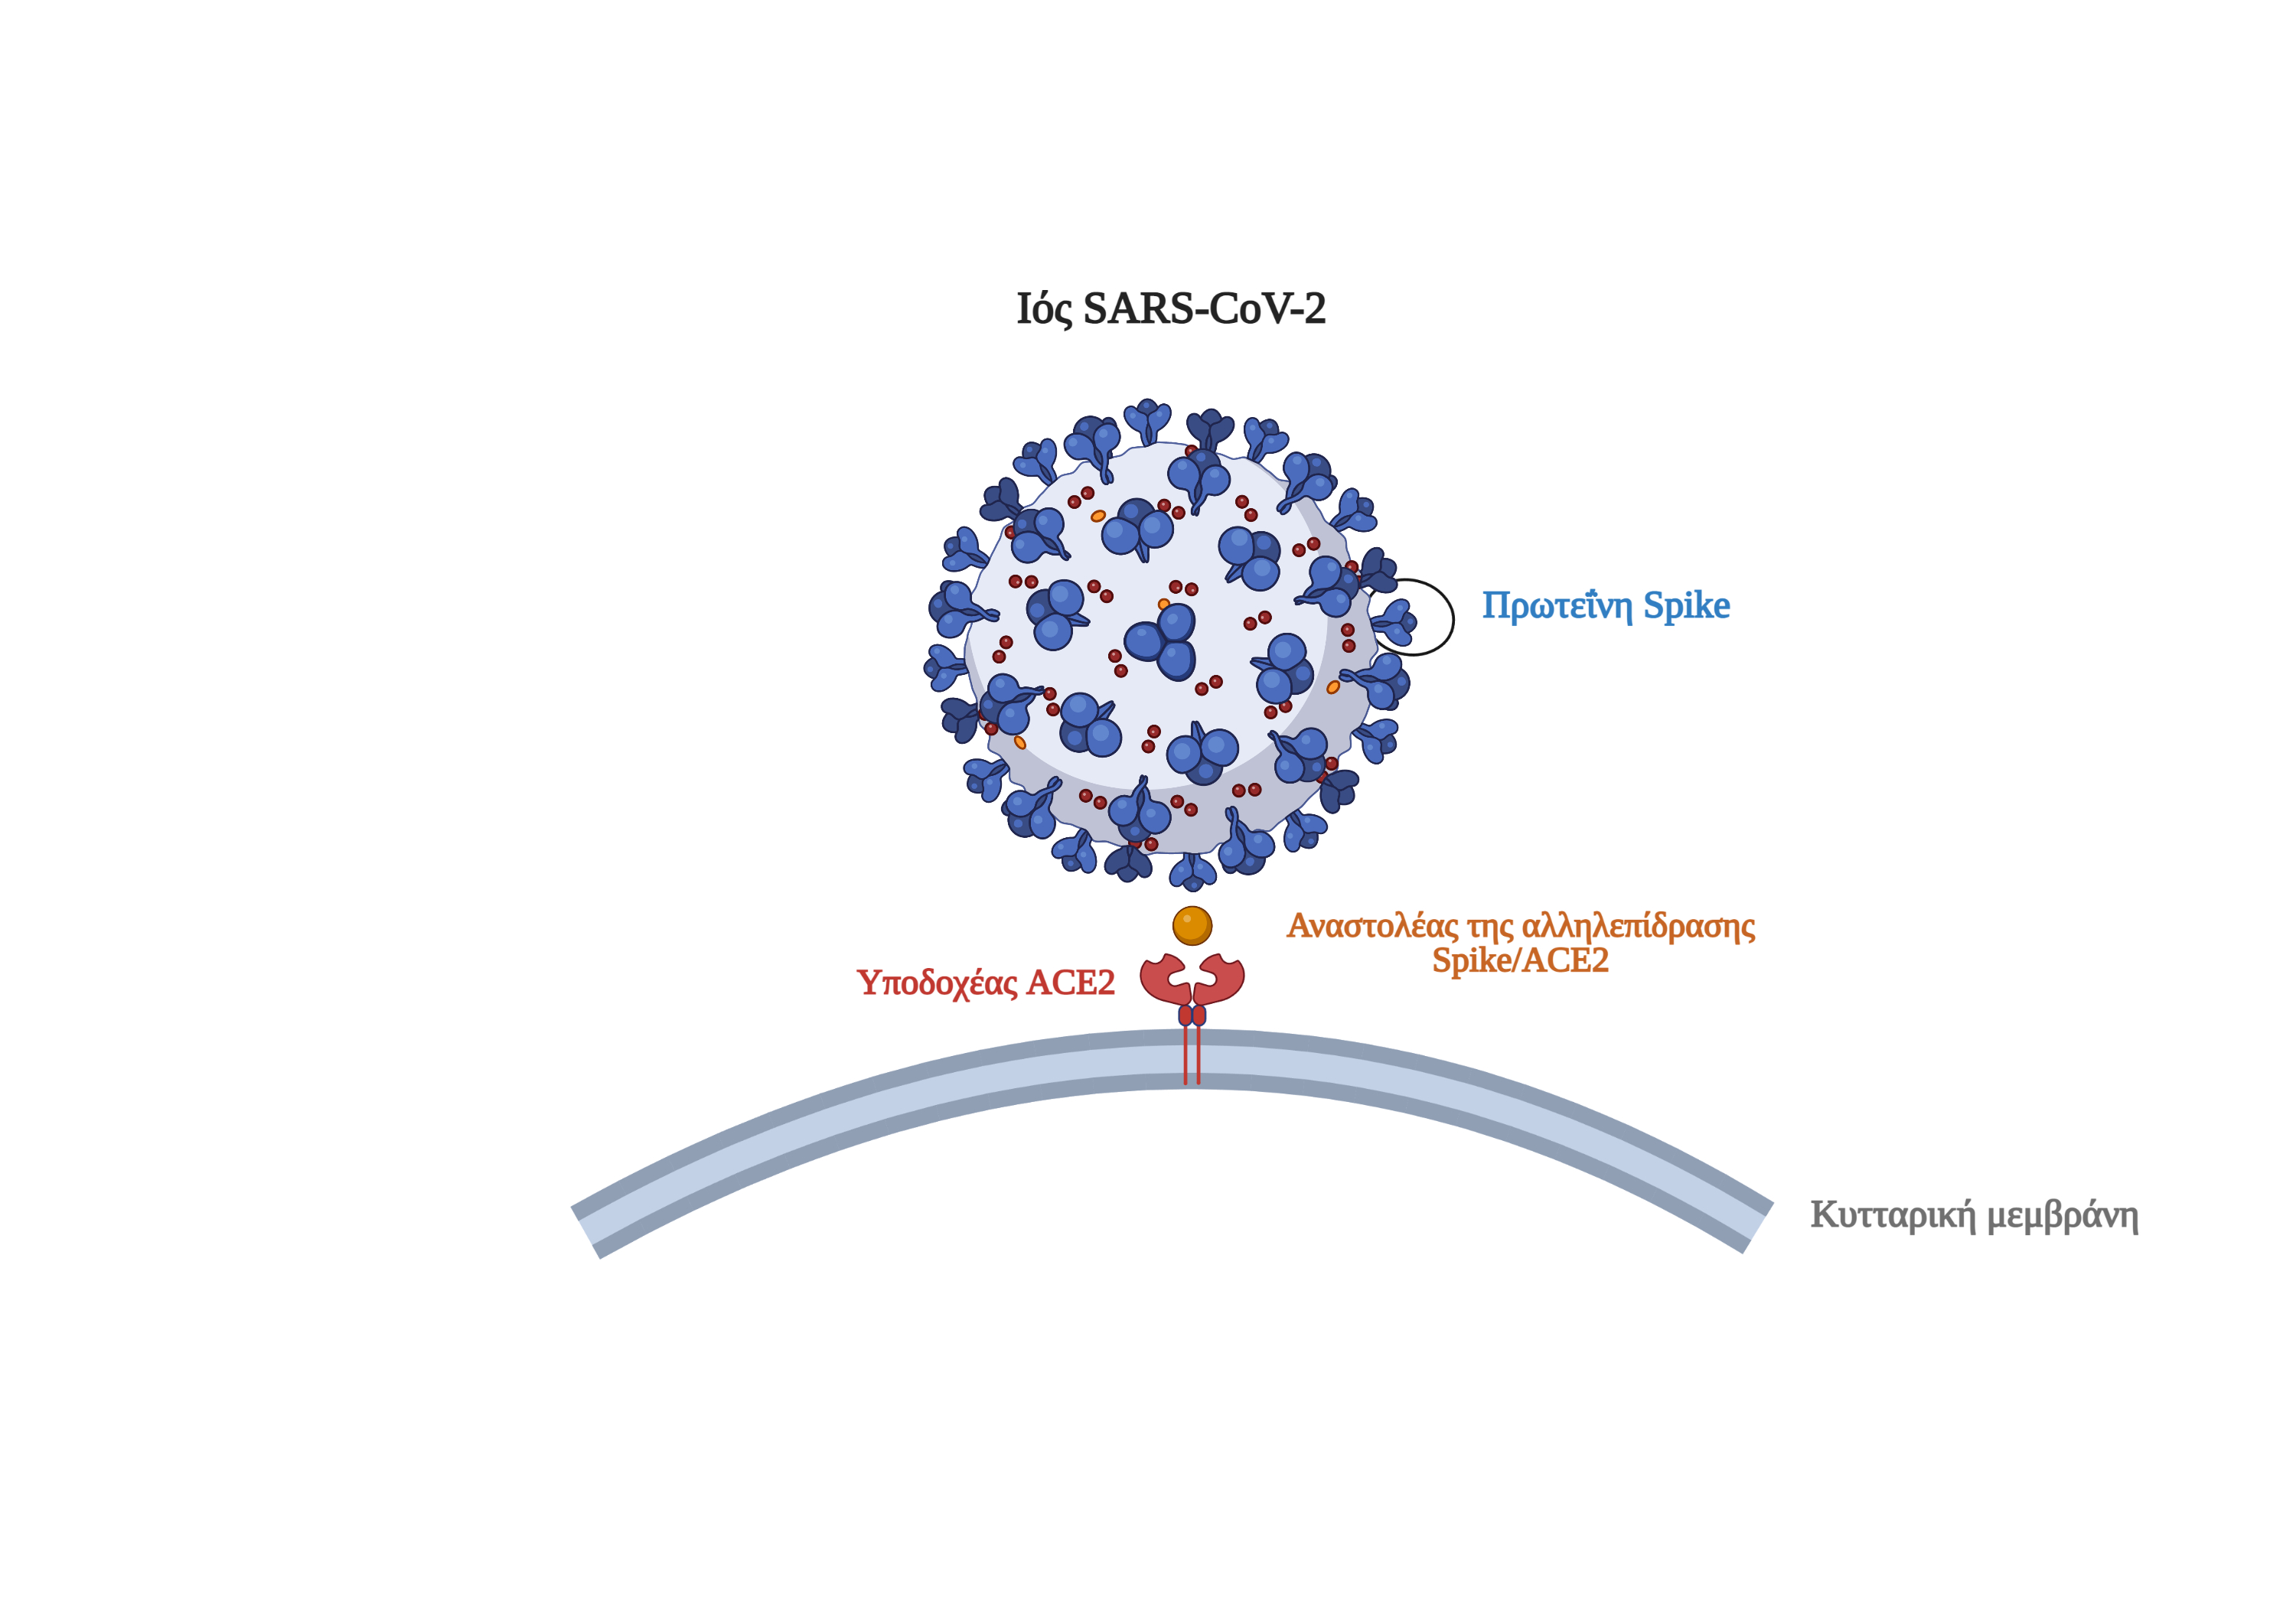 Novel chemical inhibitors of SARS CoV-2 virus